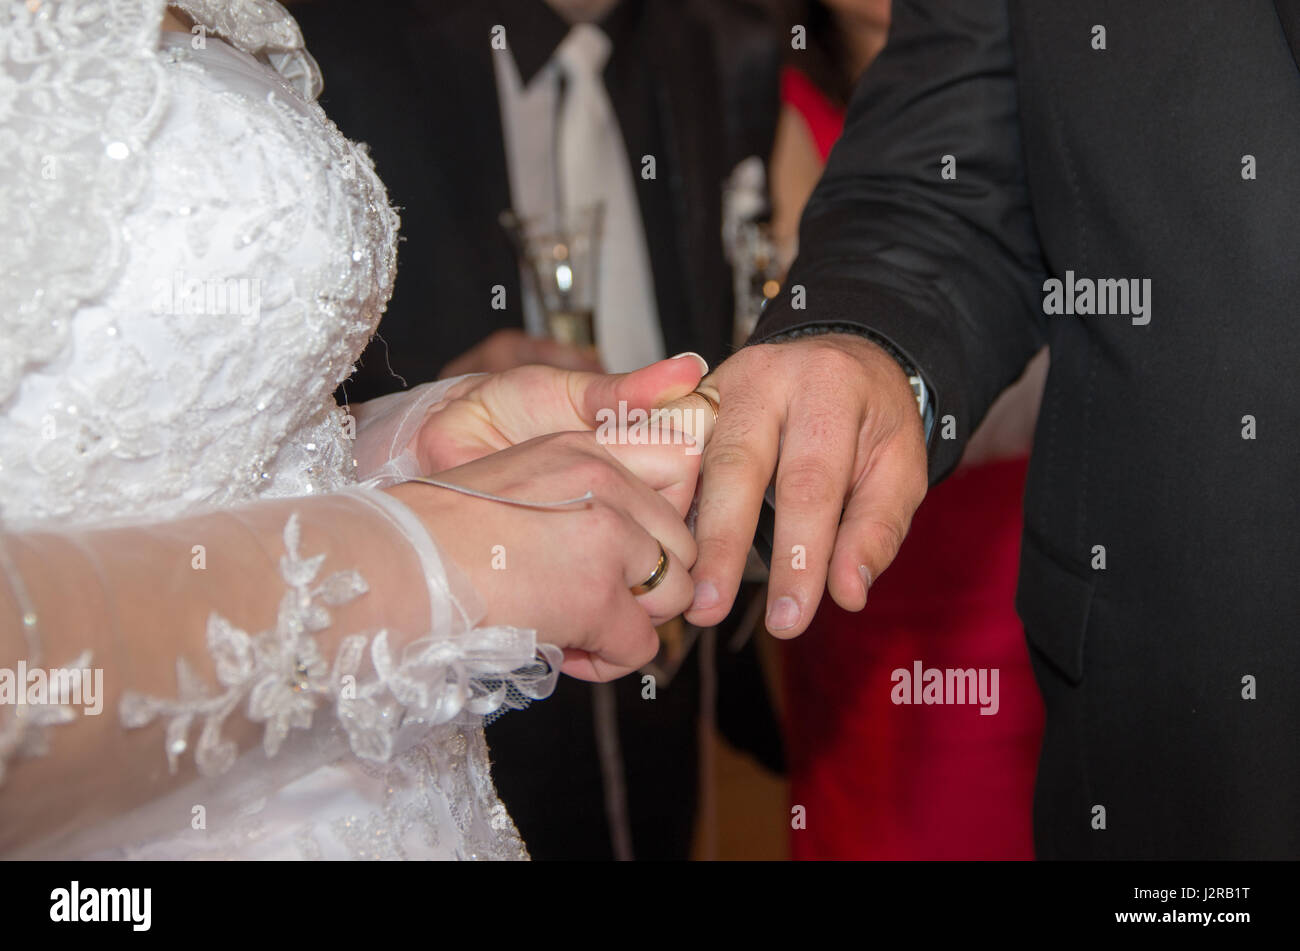 Los recién casados. Novia pone un anillo de bodas en el novio. Manos de recién casados y anillos de boda. El compromiso, la felicidad y el amor Foto de stock